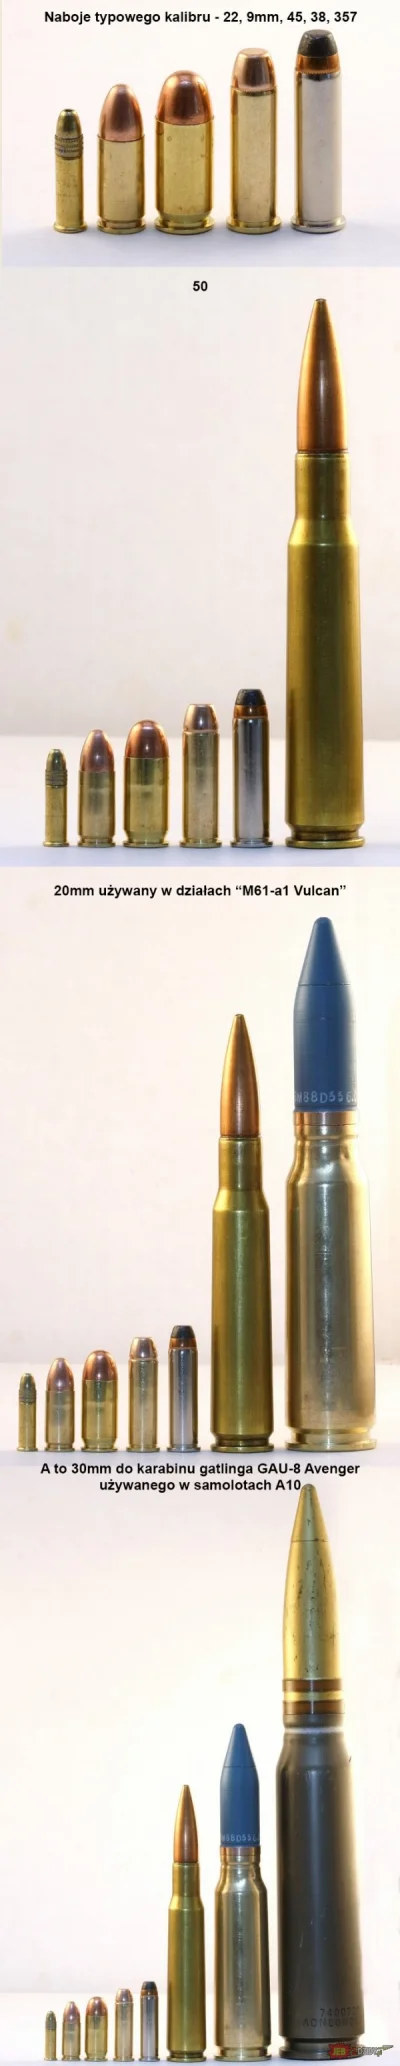 A.....r - Porównanie wielkości nabojów dla różnych kalibrów.
#jbzd #bron #amunicja #...